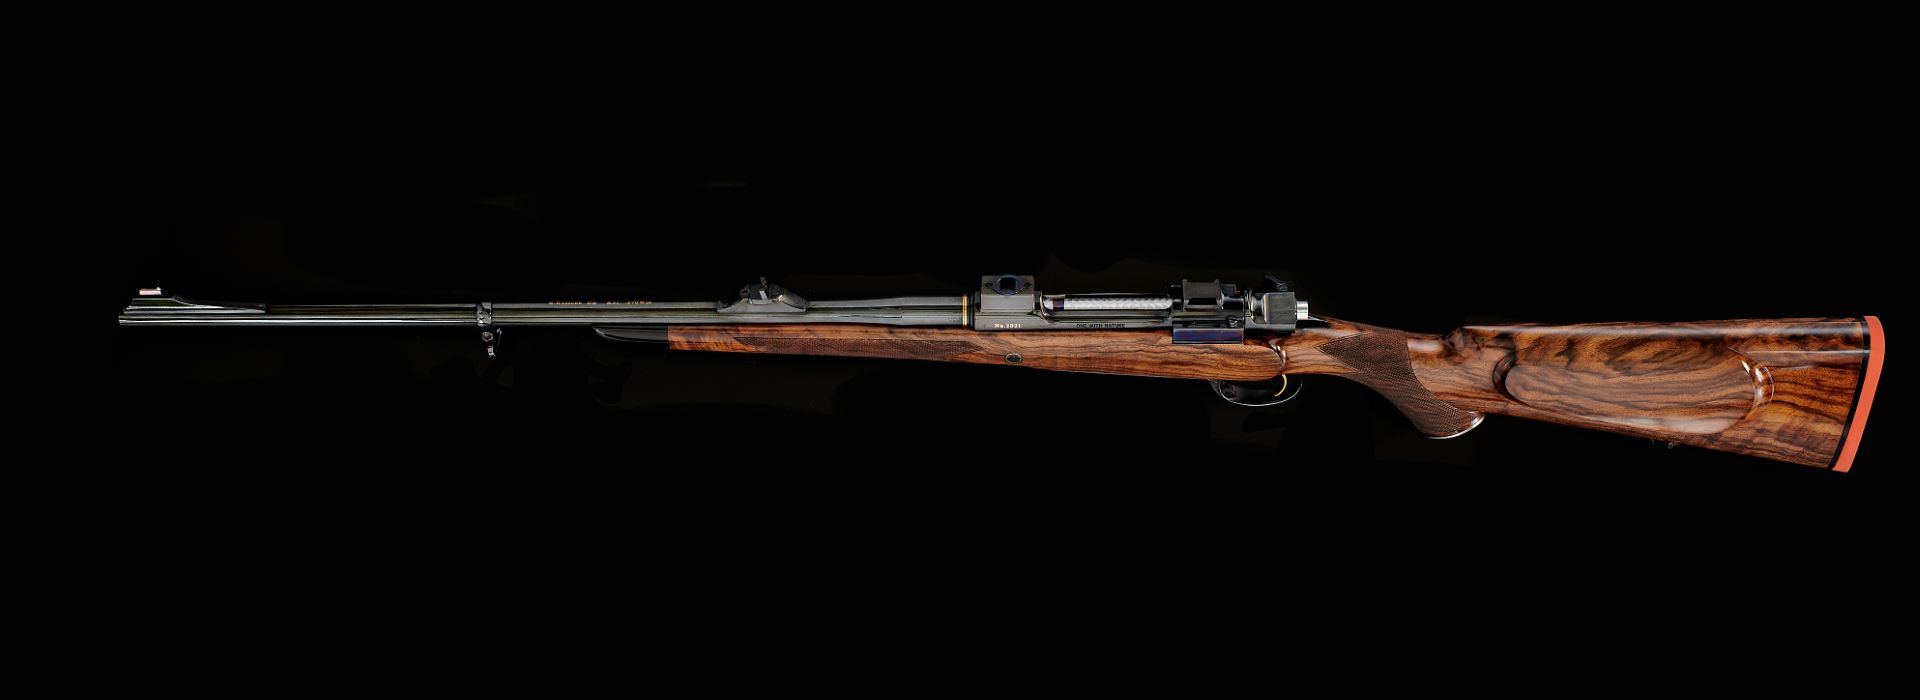 The simple elegance of the Kesslerin supreme hunting rifle from the gunsmith master workshop Waffen Kessler in Deggendorf